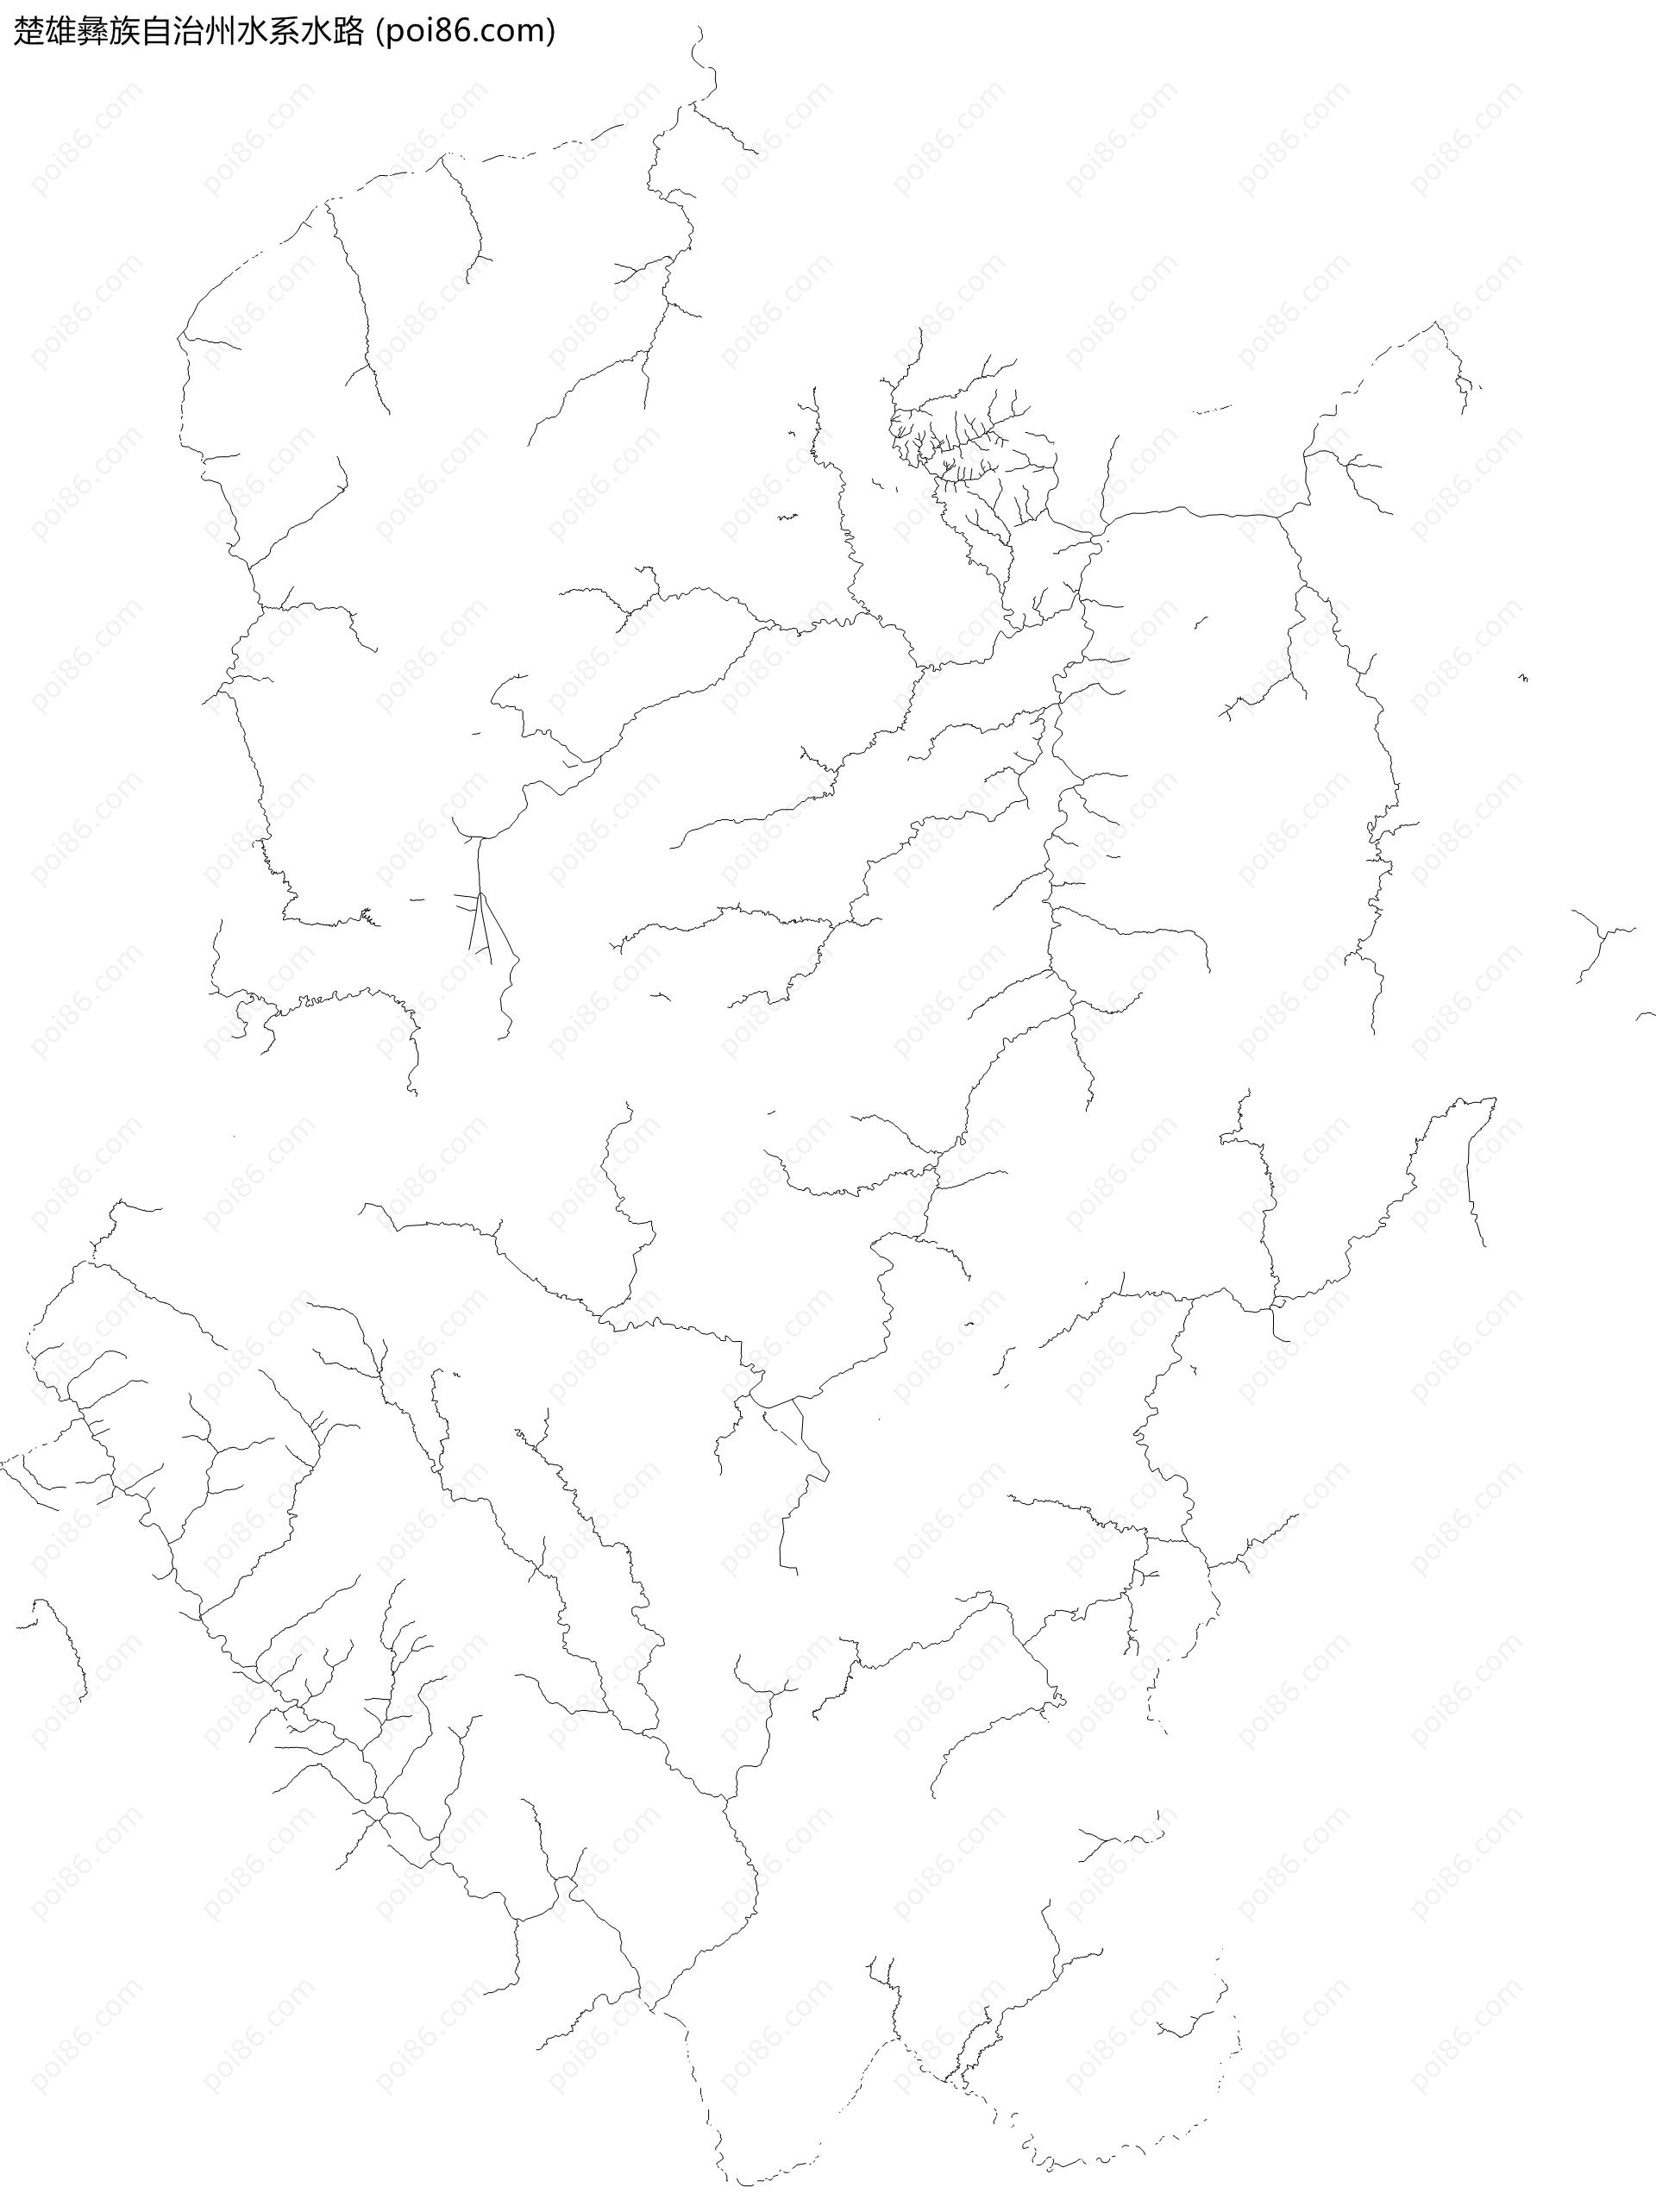 楚雄彝族自治州水系水路地图